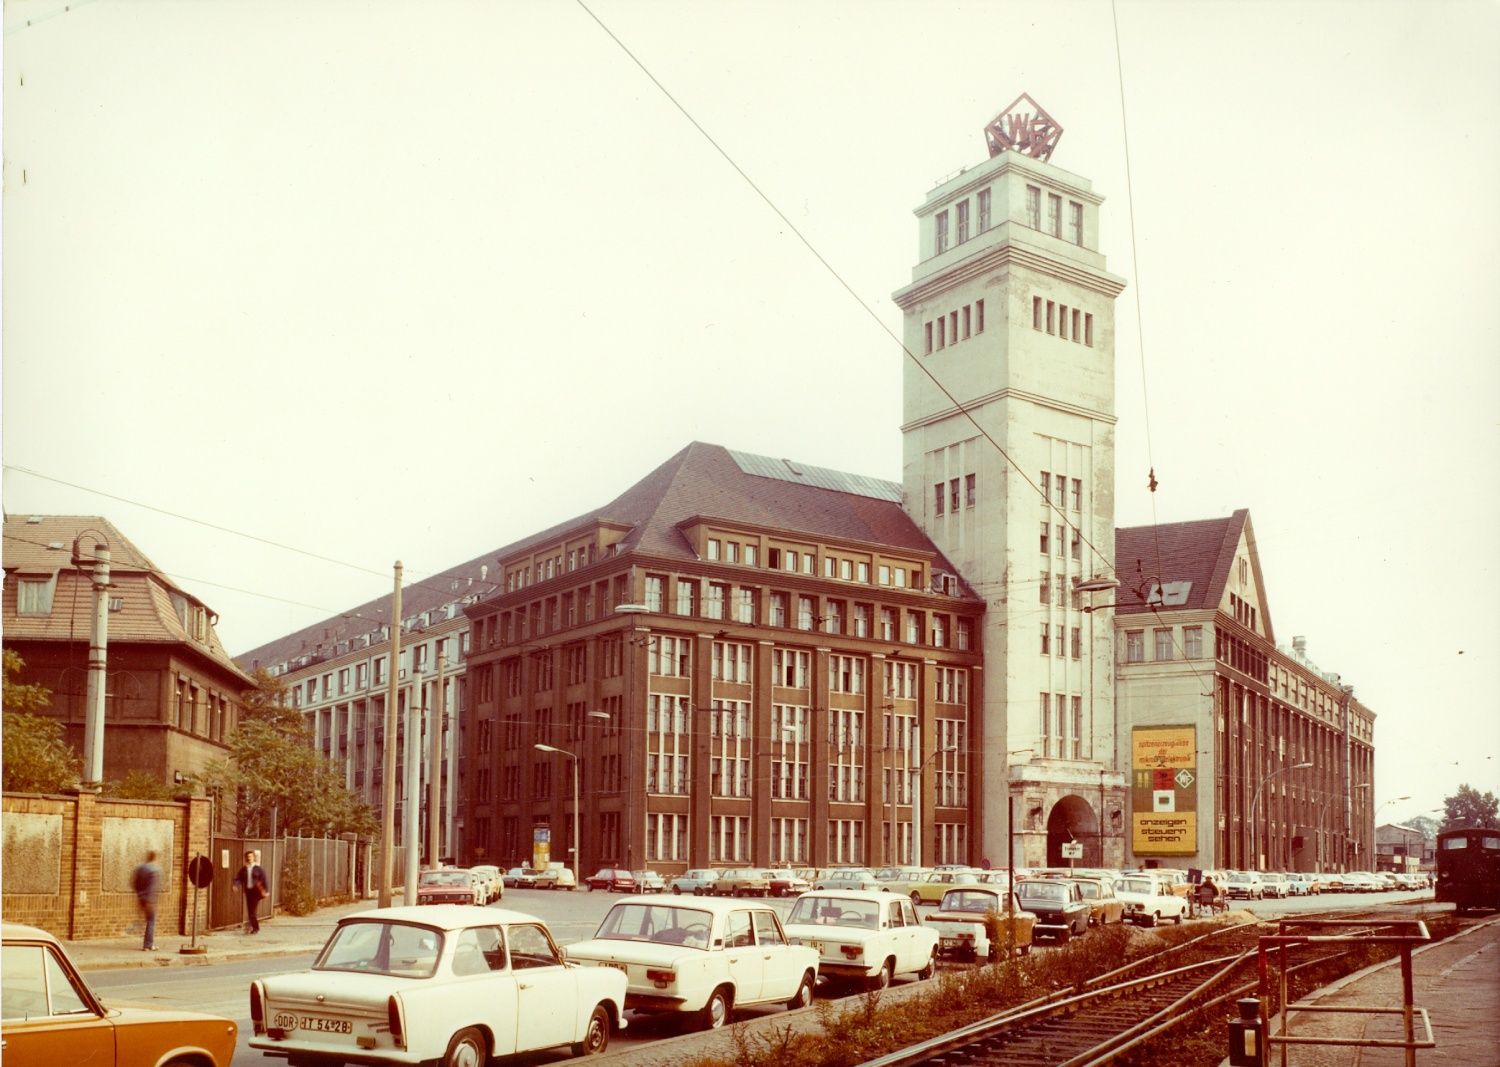 WF Turm mit Peter-Behrens-Bau, am rechten Bildrand Bahngleise, Autos im Vordergrund, Ecke Wilhelminenhofstraße-Ostendstraße